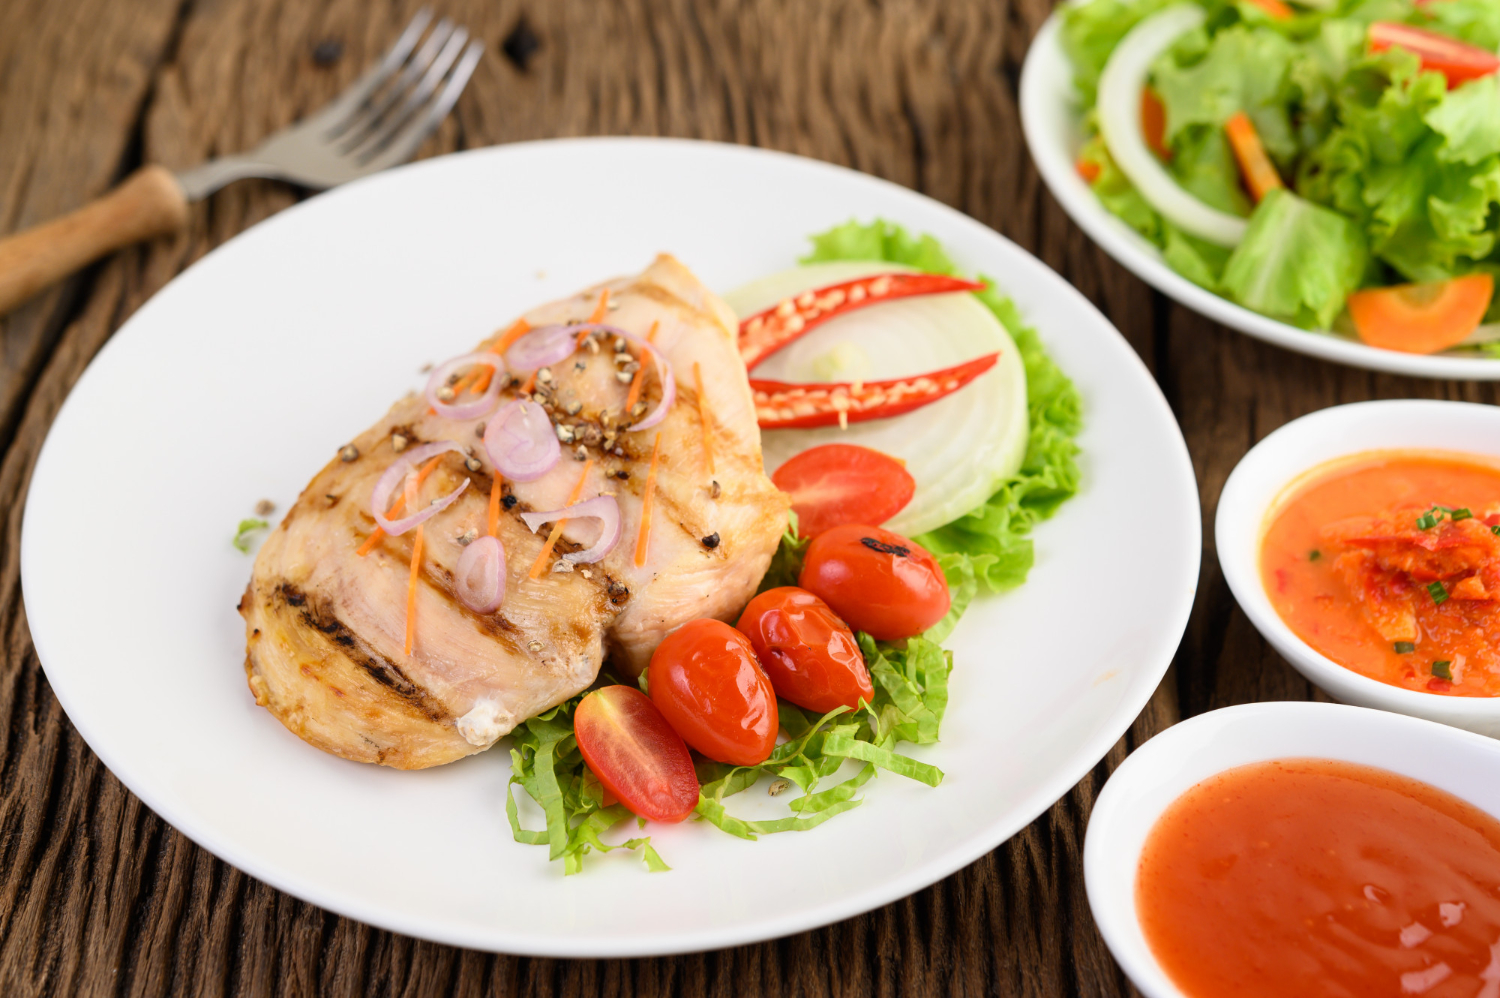 Simpel dan Lezat! Ini Dia 4 Resep Masakan Ayam Fillet Ala Restoran yang Bisa Kamu Buat Sendiri Dirumah